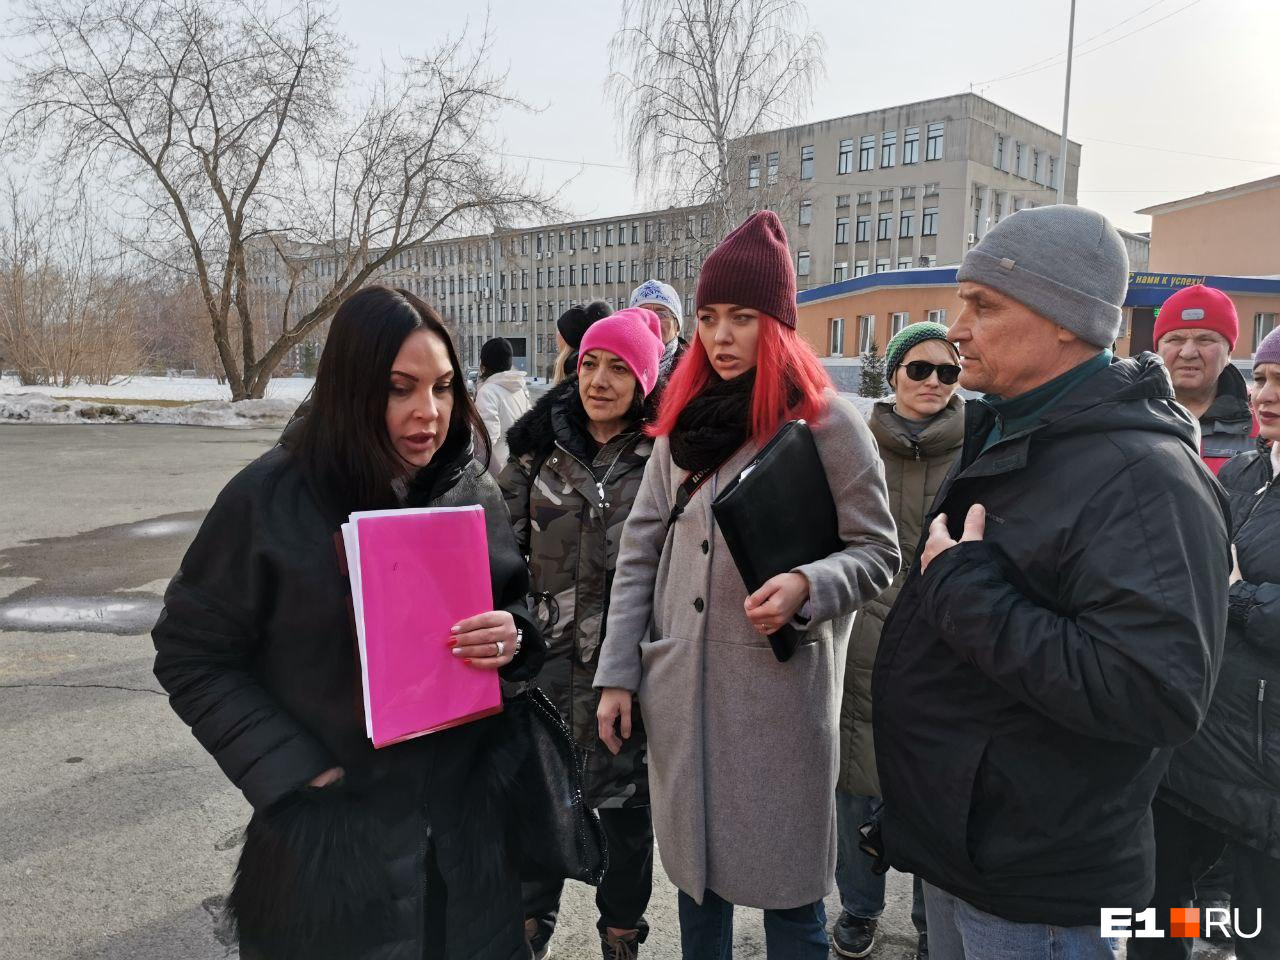 Активисты обступили сотрудницу прокуратуры (с розовой папкой)